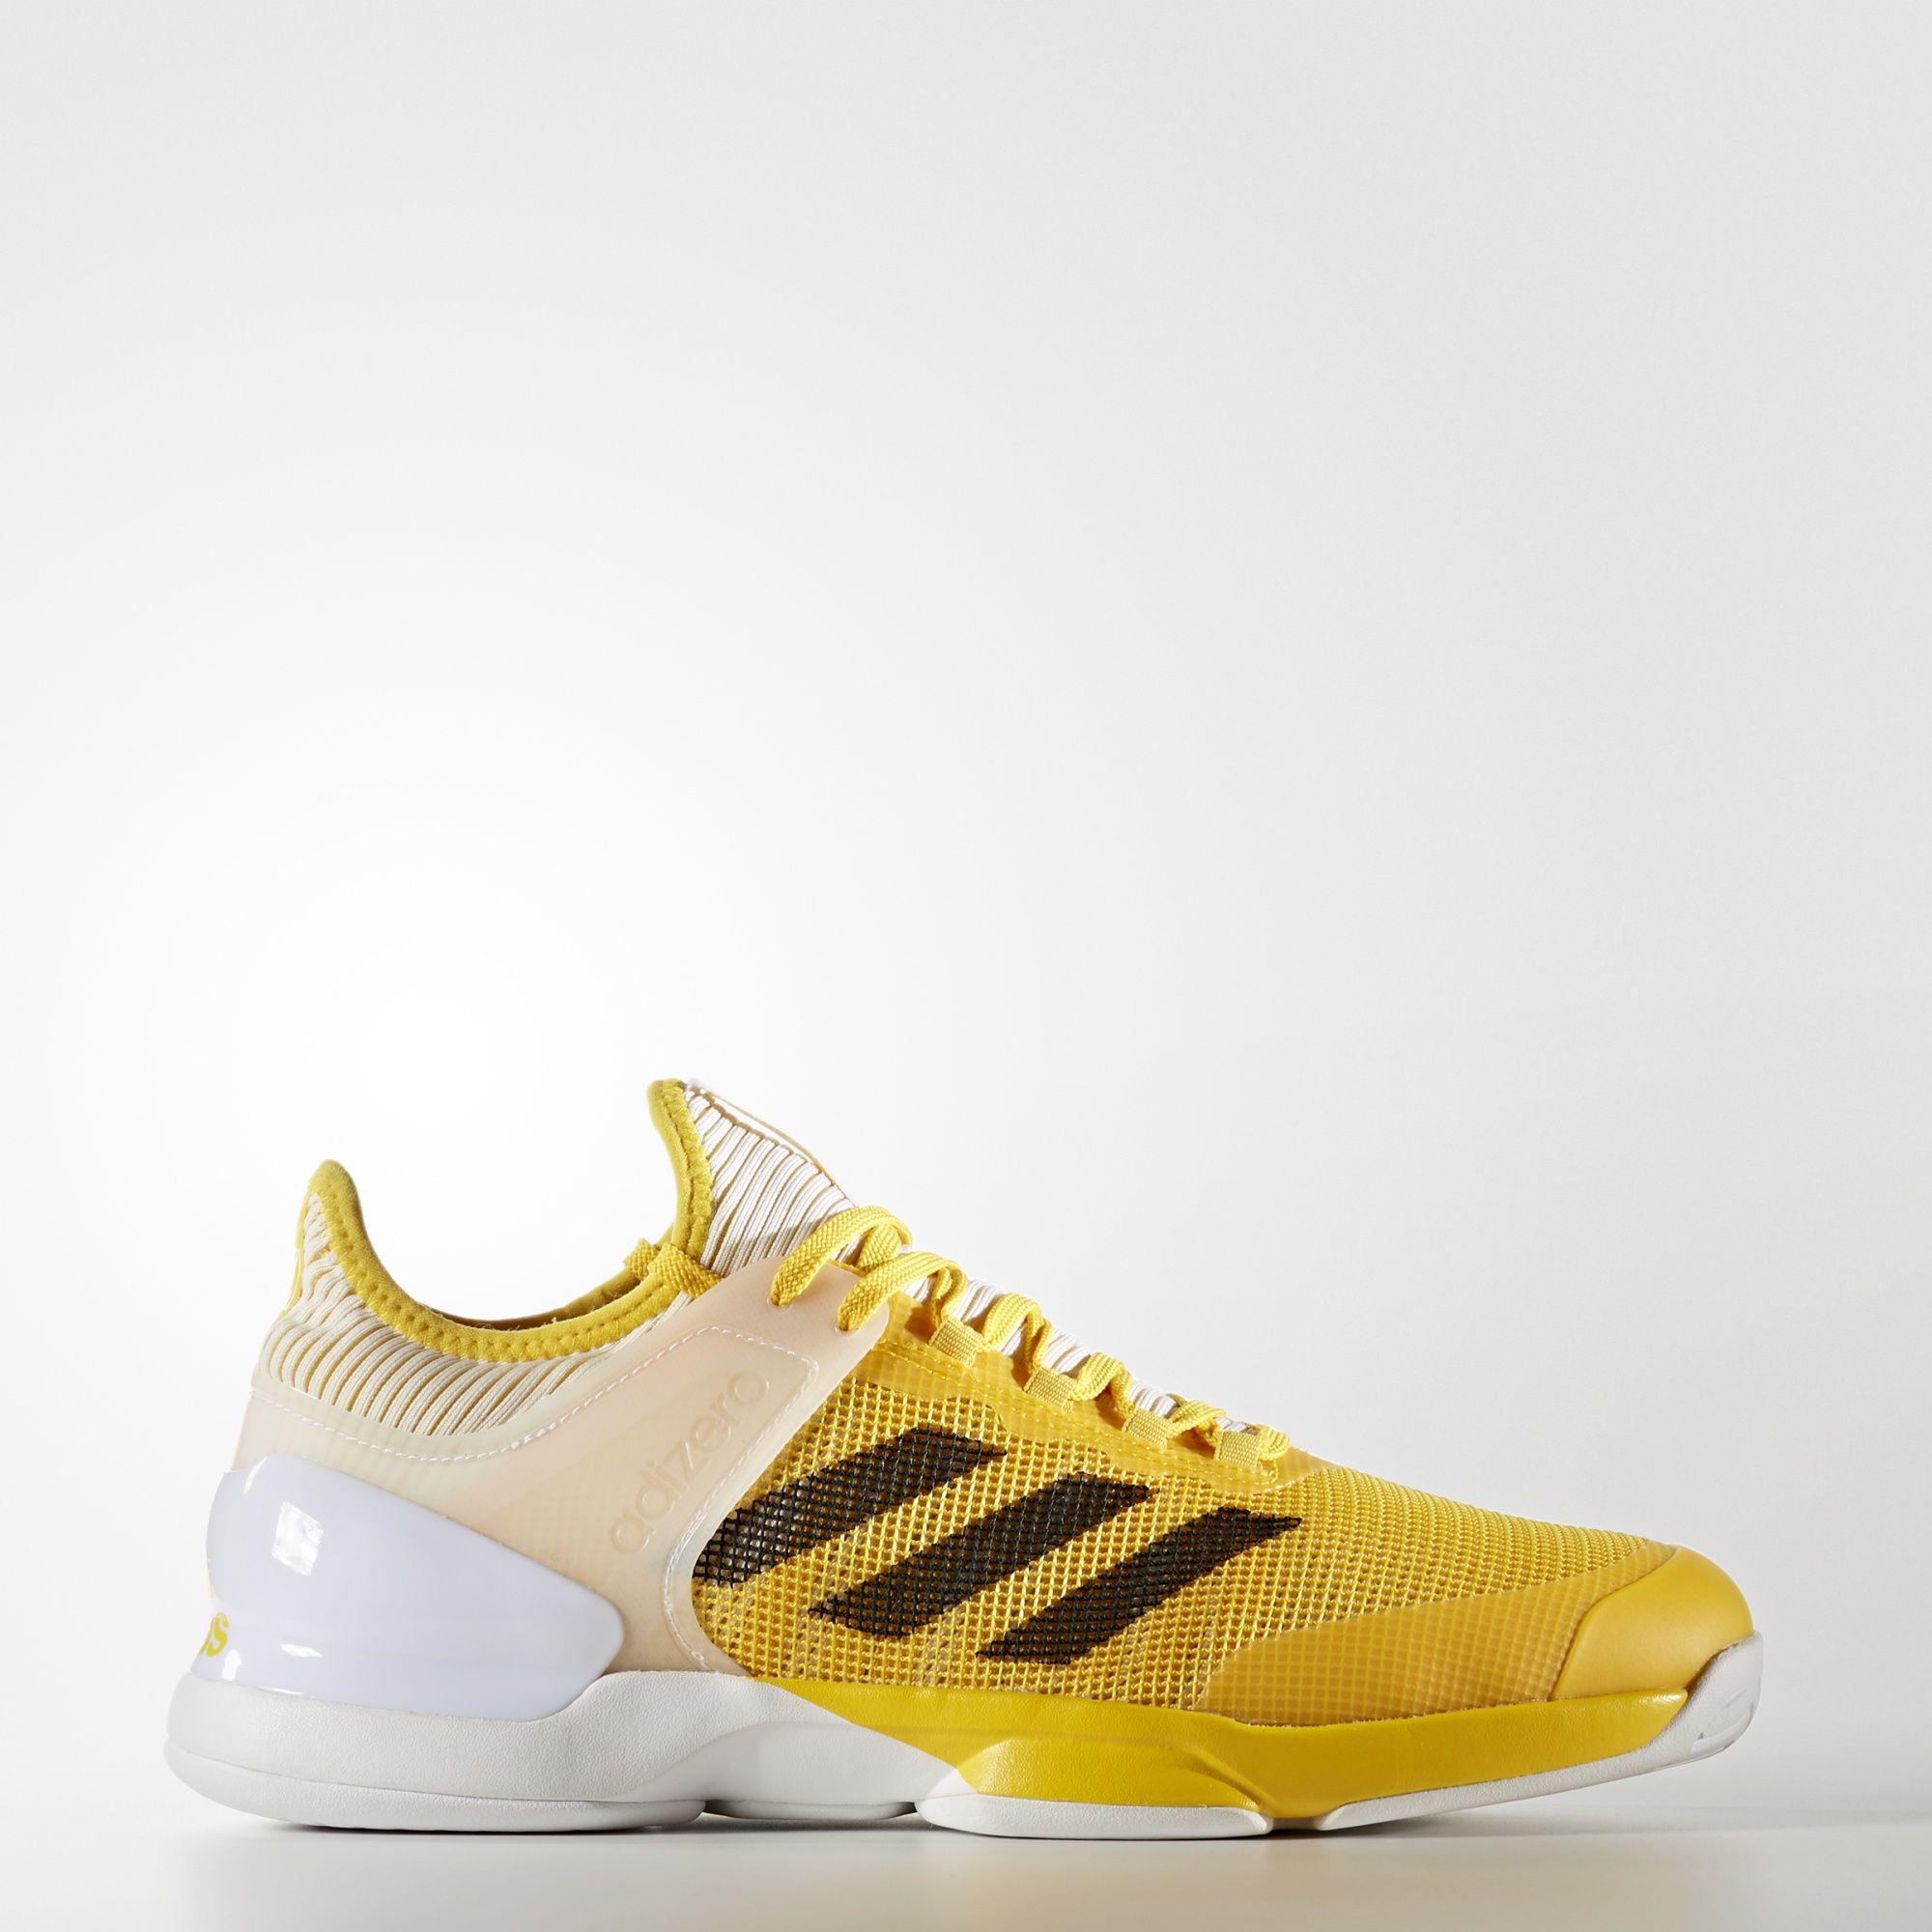 Adidas Mens Adizero Ubersonic 2.0 Tennis Shoes - Yellow - Tennisnuts.com